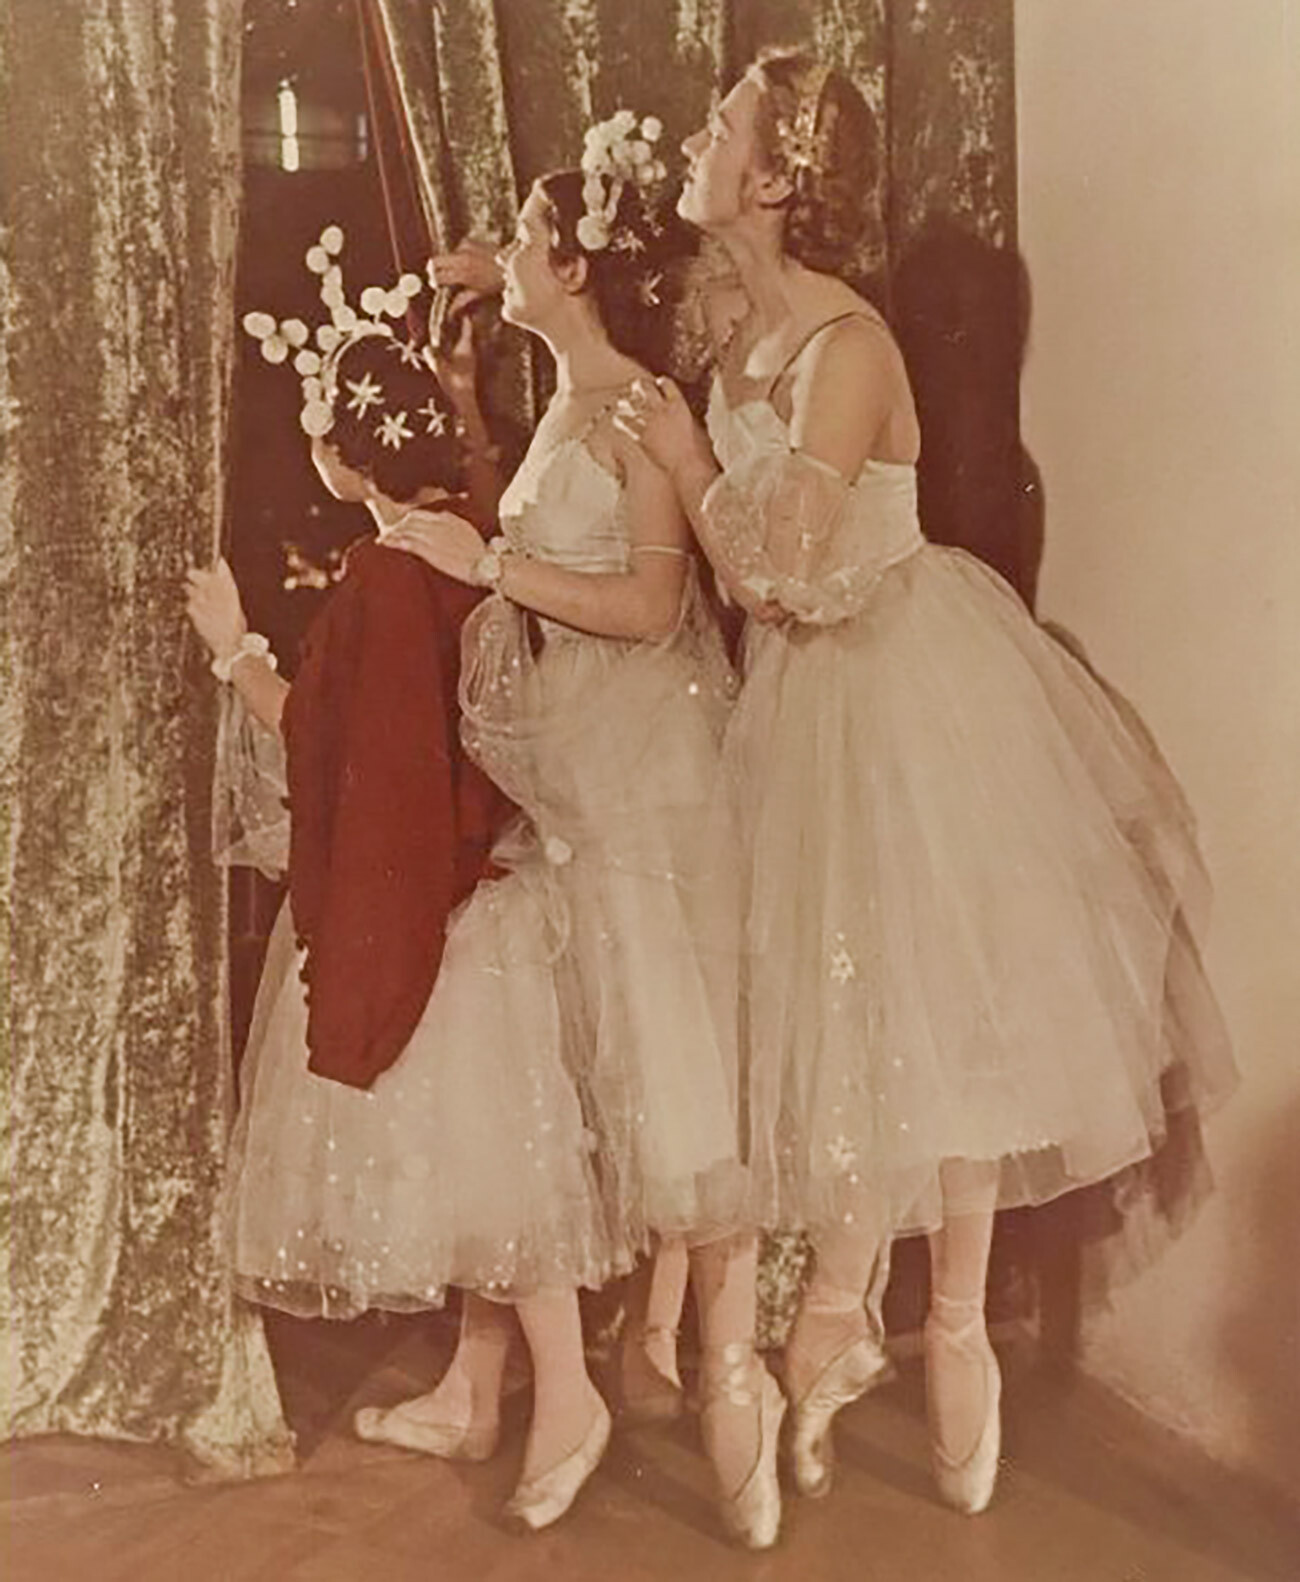 「バレリーナたち」、1950年代